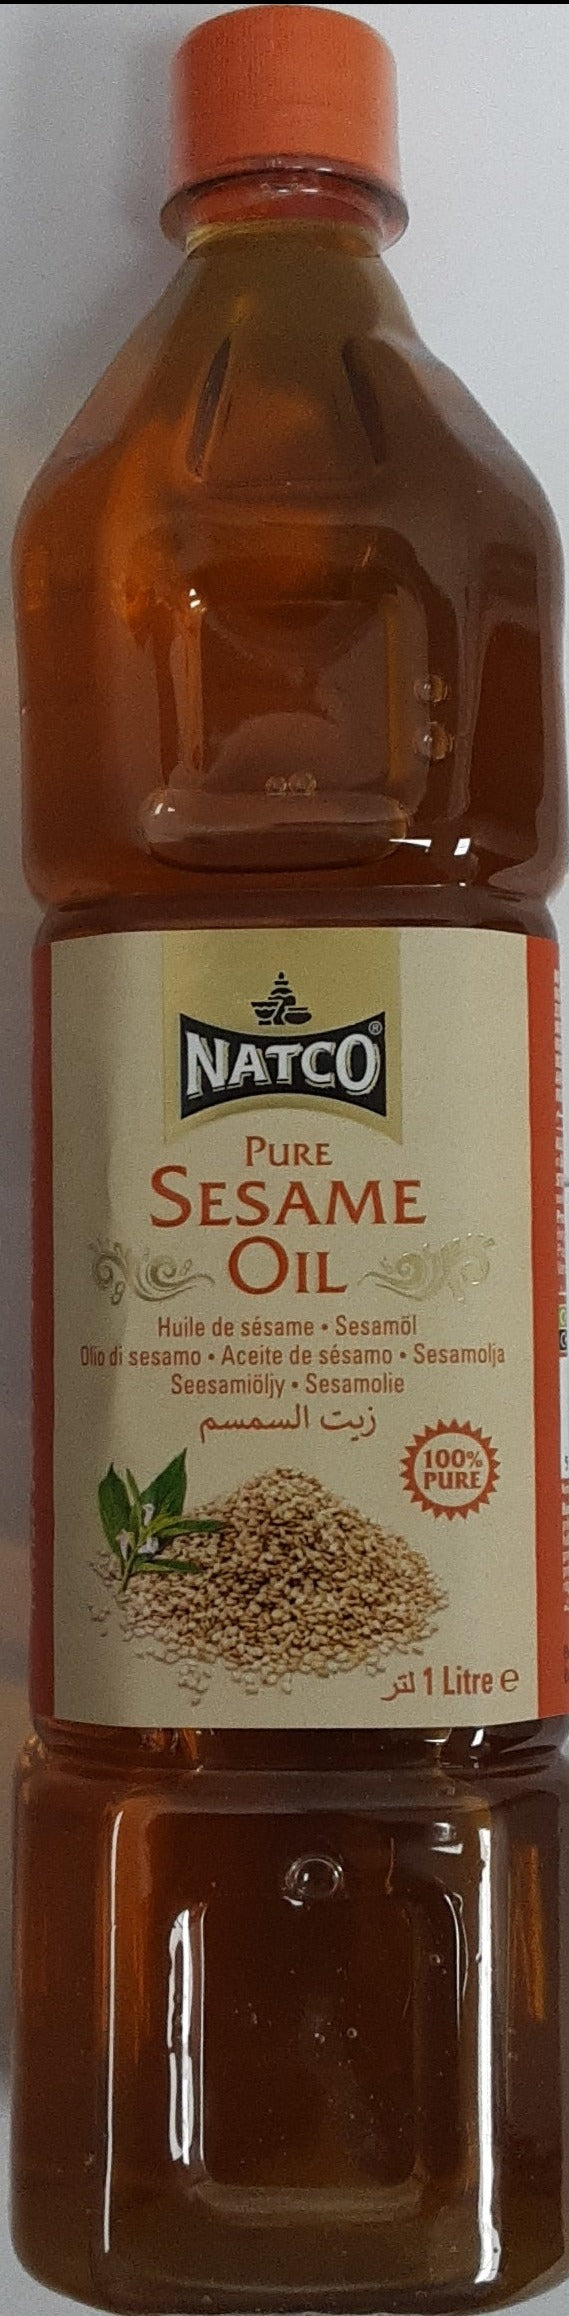 Natco Oil Pure Sesame 1ltr